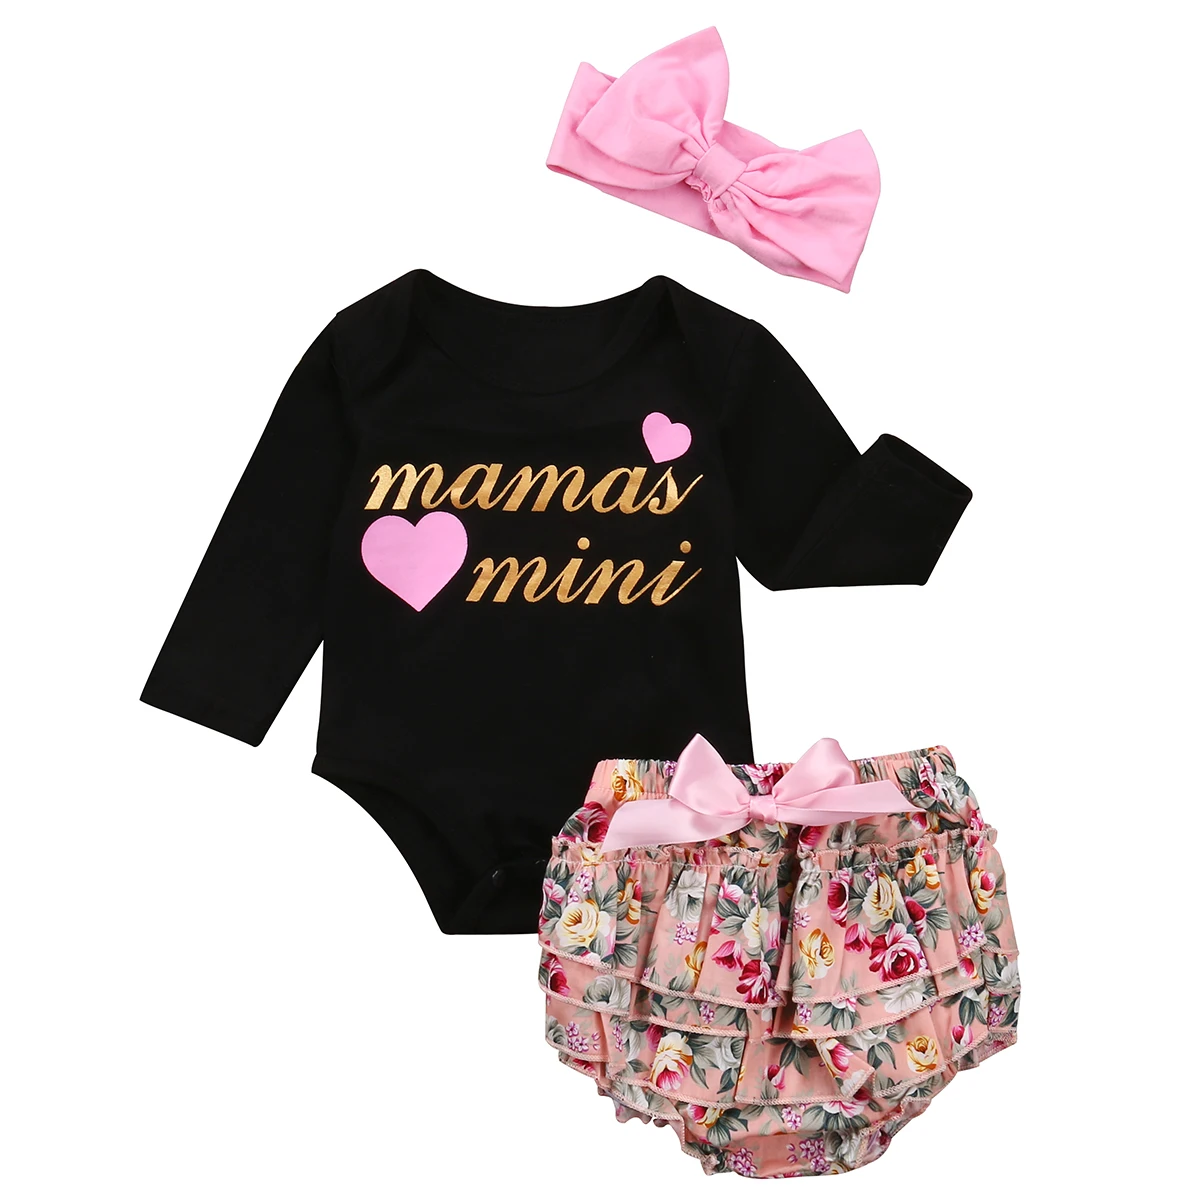 Для маленьких девочек одежда с надисью "Mamas Mini" печати боди+ цветочные шаровары+ повязка на голову, летний комплект одежды из 3 предметов